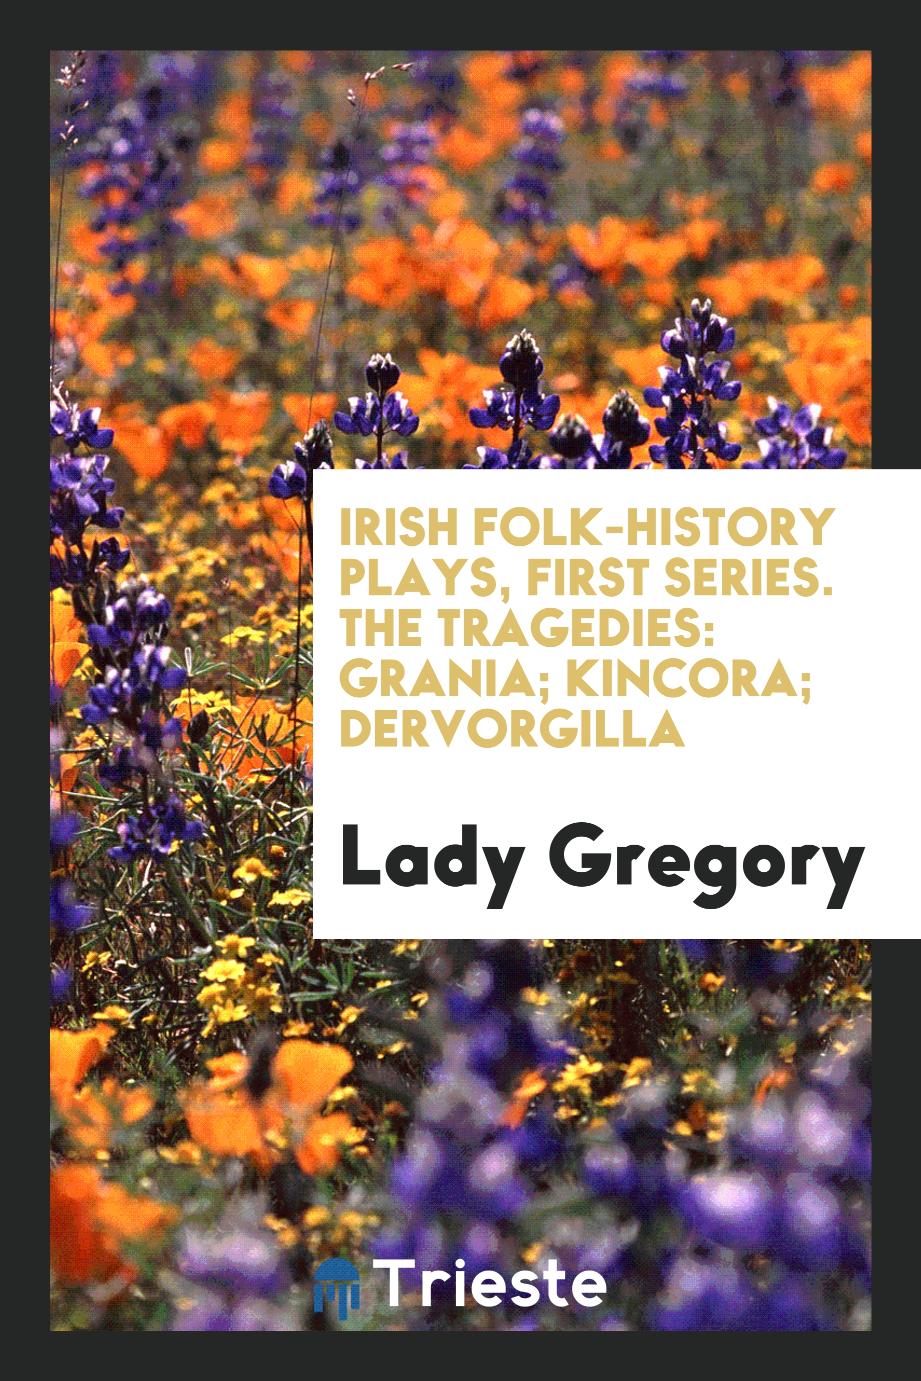 Irish folk-history plays, first series. The tragedies: Grania; Kincora; Dervorgilla